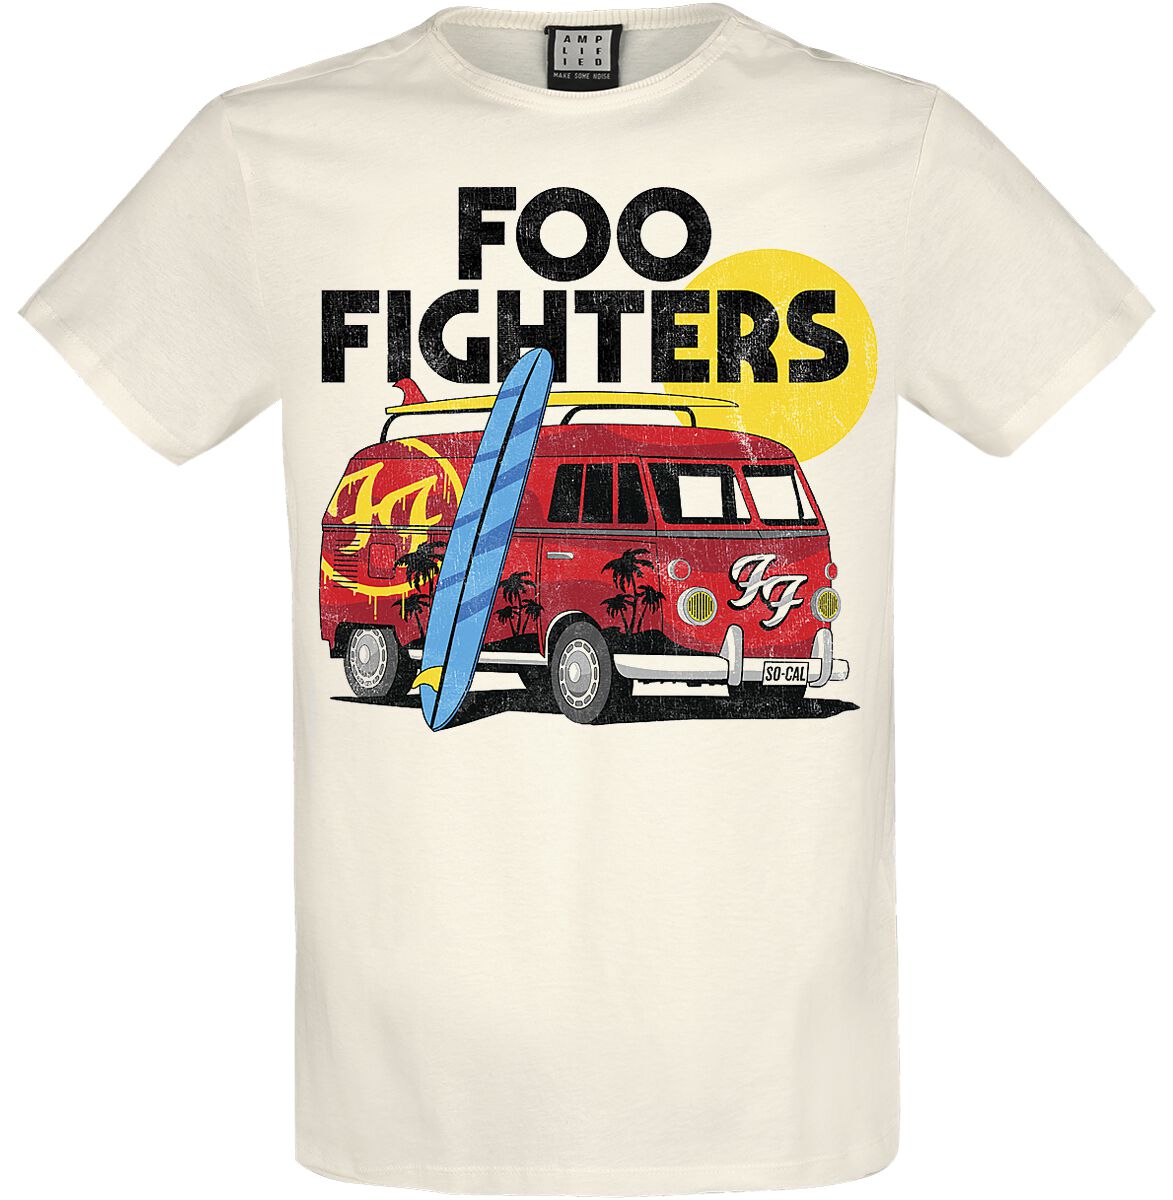 Foo Fighters T-Shirt - Amplified Collection - Camper Van - XS bis 3XL - für Männer - Größe 3XL - altweiß  - Lizenziertes Merchandise!